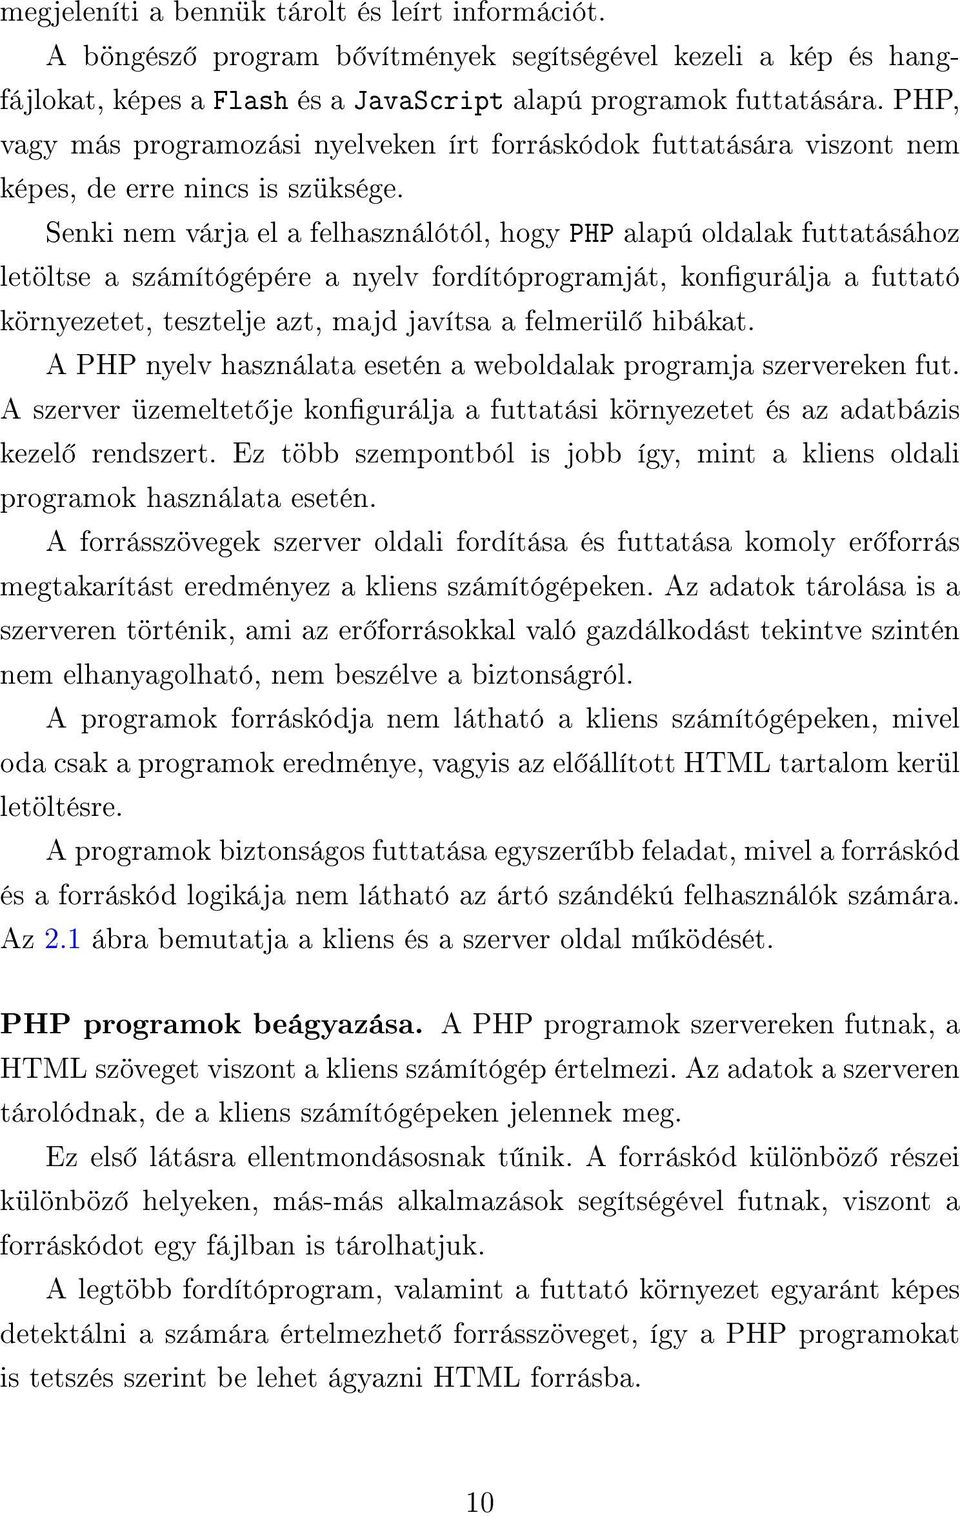 Senki nem várja el a felhasználótól, hogy PHP alapú oldalak futtatásához letöltse a számítógépére a nyelv fordítóprogramját, kongurálja a futtató környezetet, tesztelje azt, majd javítsa a felmerül